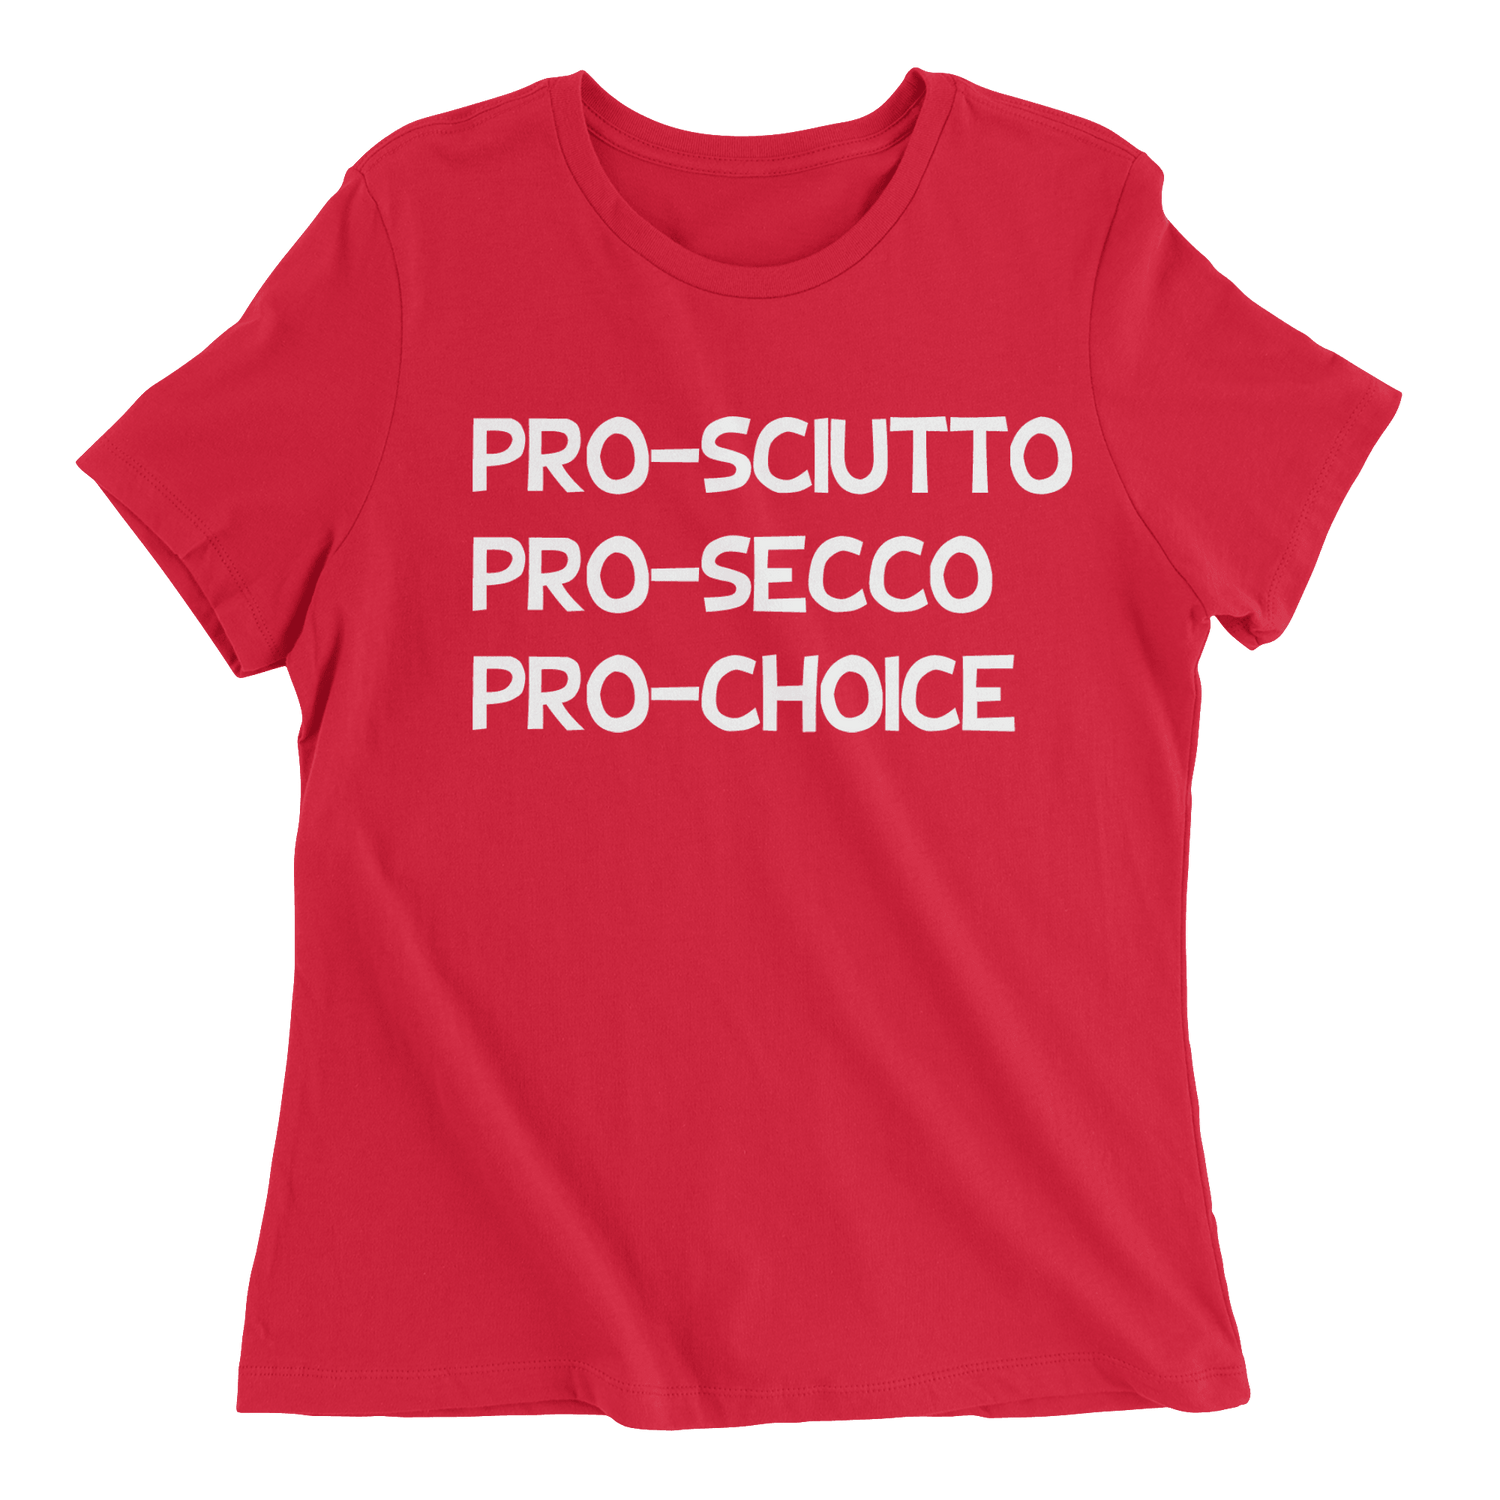 Pro-Sciutto, Pro-Secco, Pro-Choice - The T-Shirt Deli, Co.